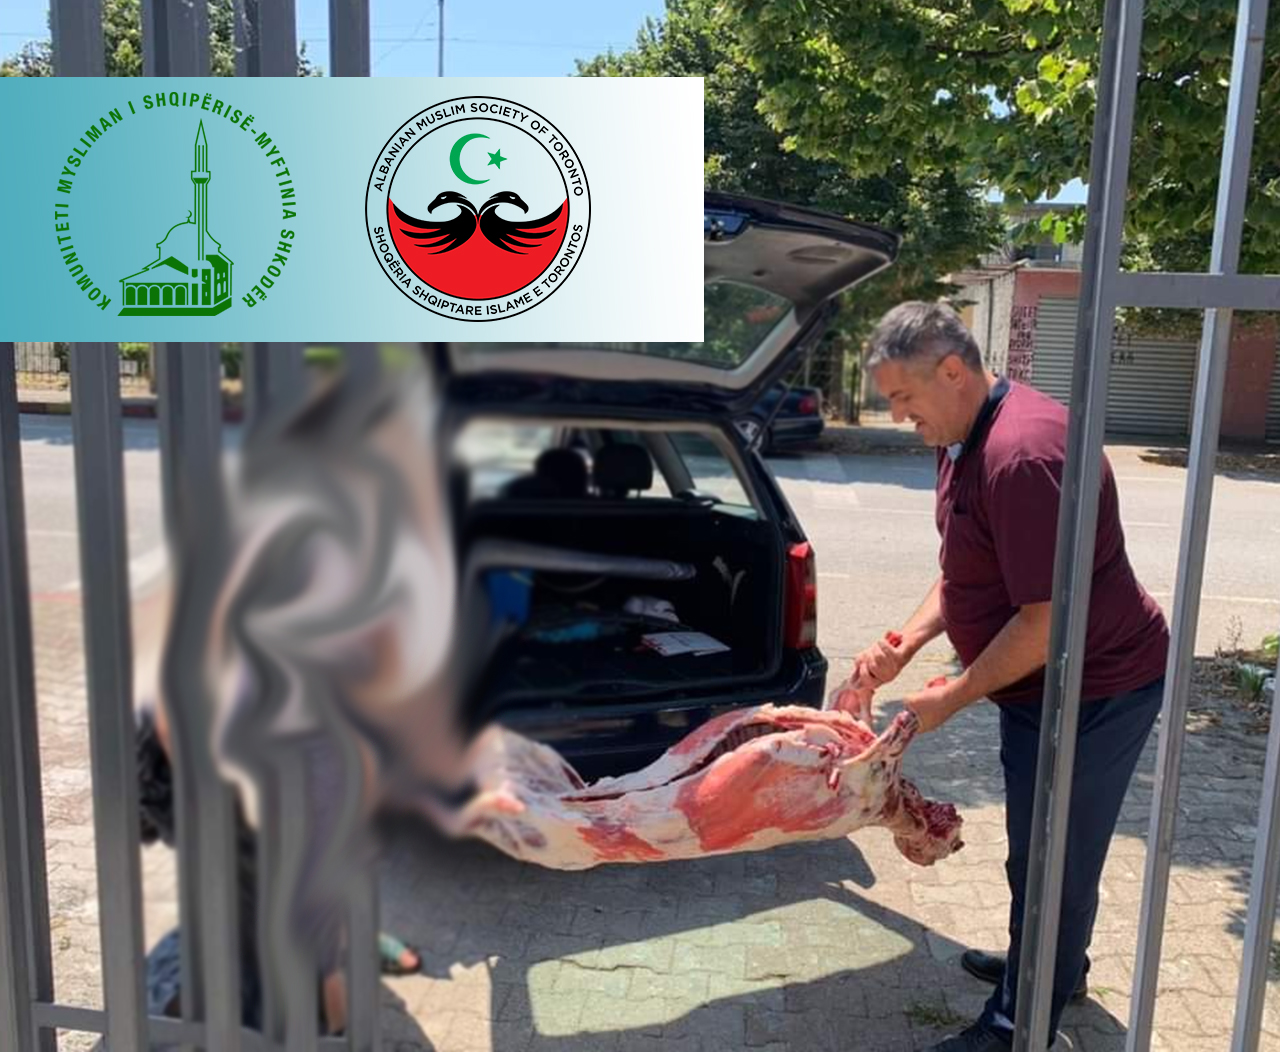 Shoqëria Shqiptare Islame e Torontos dhuron kurbanet e saj për zonën e Bushatit dhe të Barbullushit